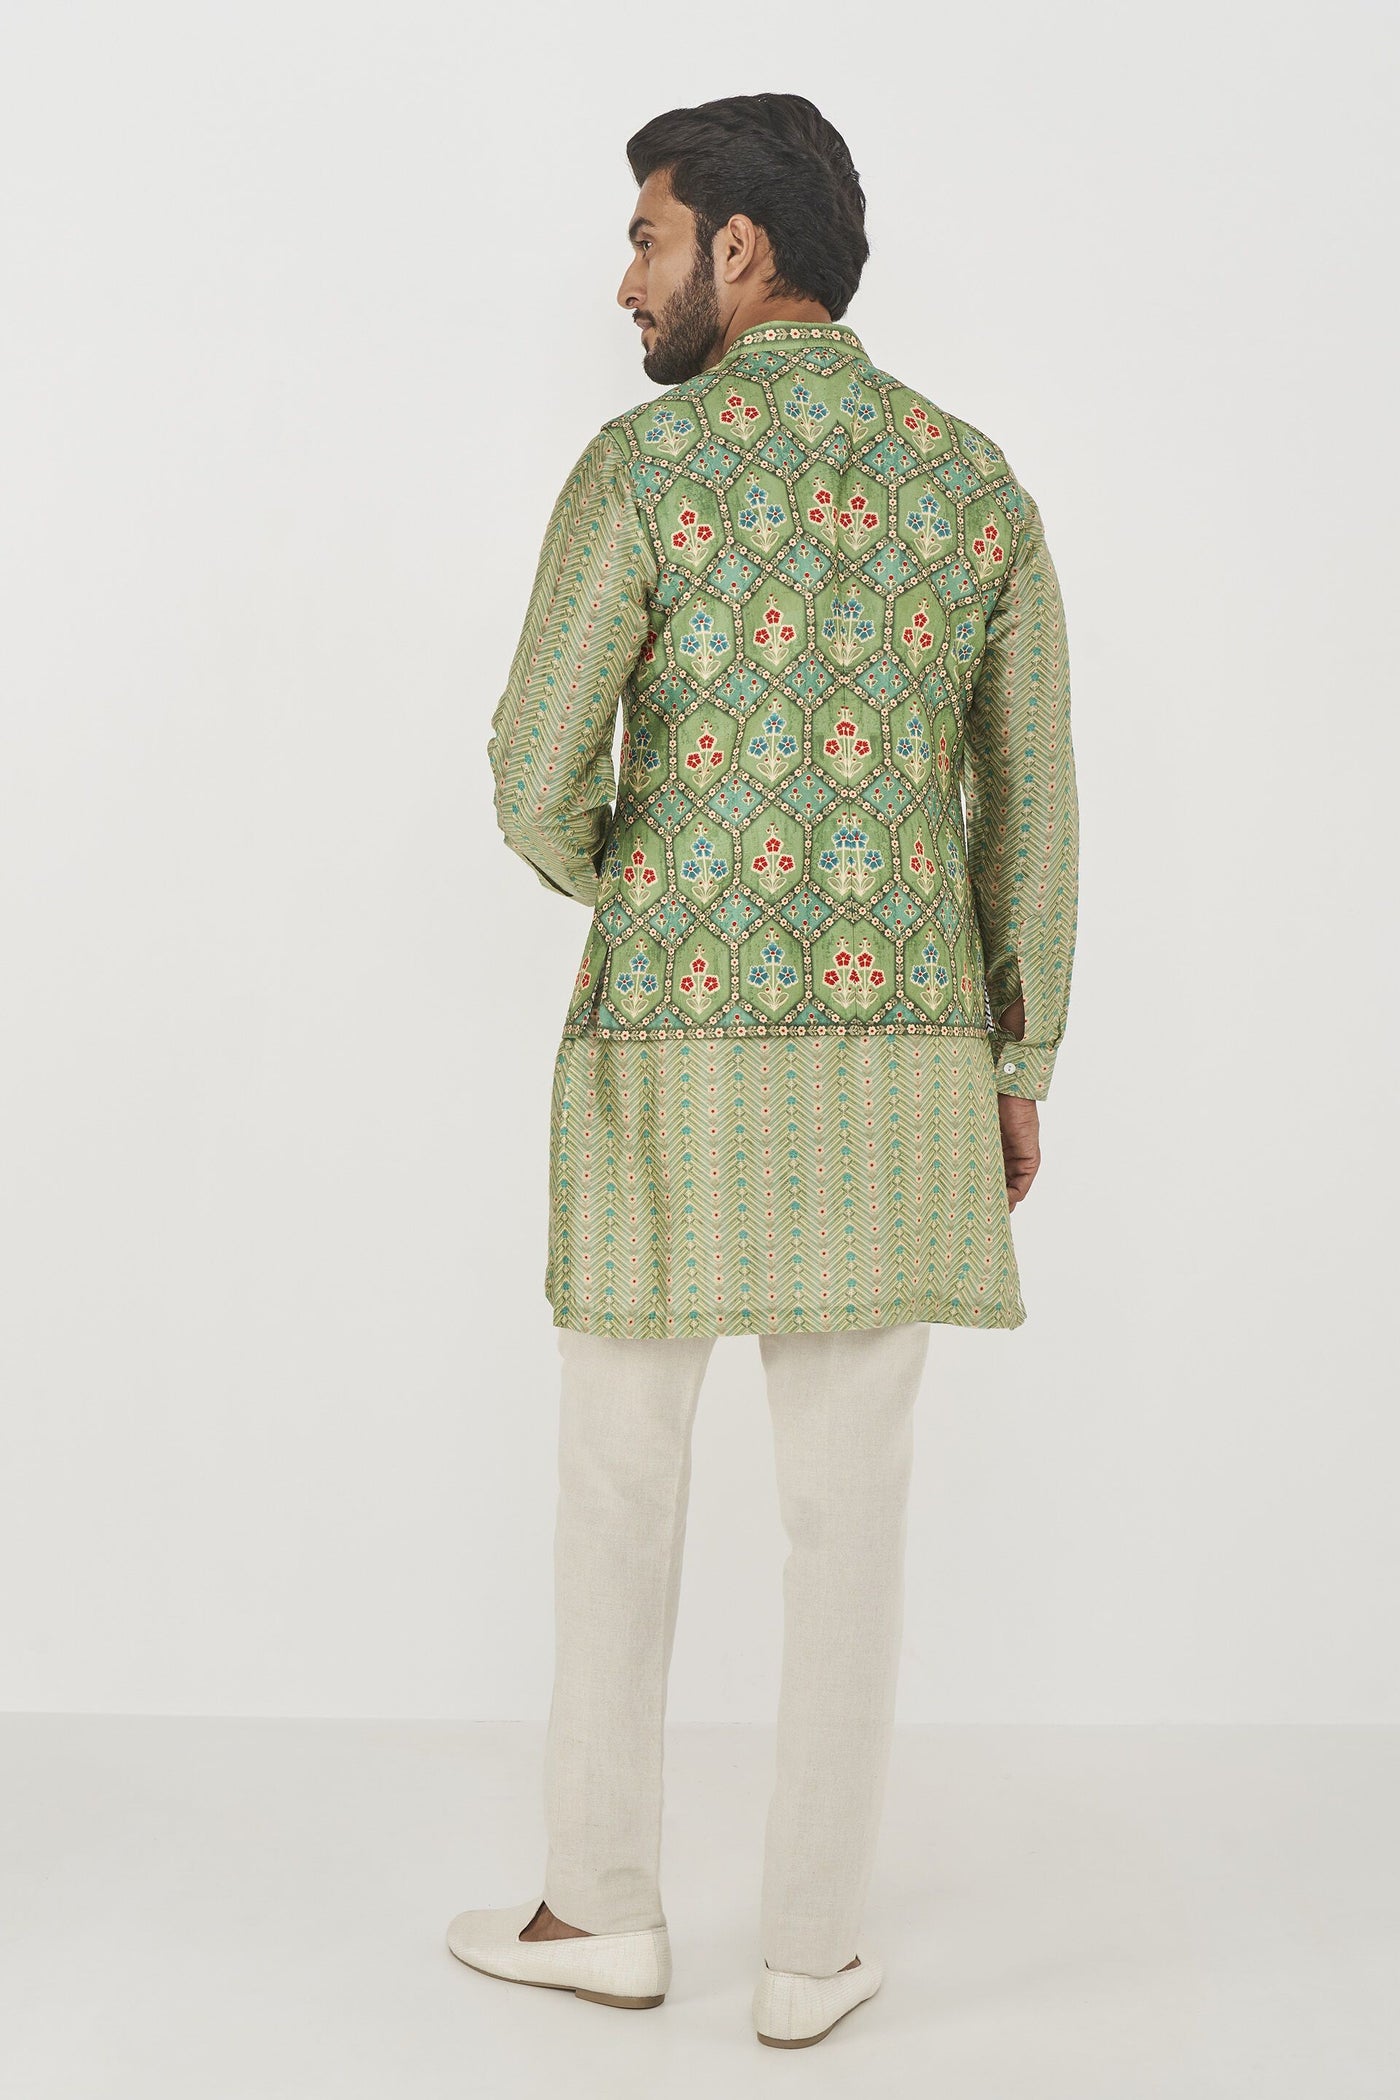 Anita Dongre menswear Avyukt Bandi Sage Green indian designer wear online shopping melange singapore